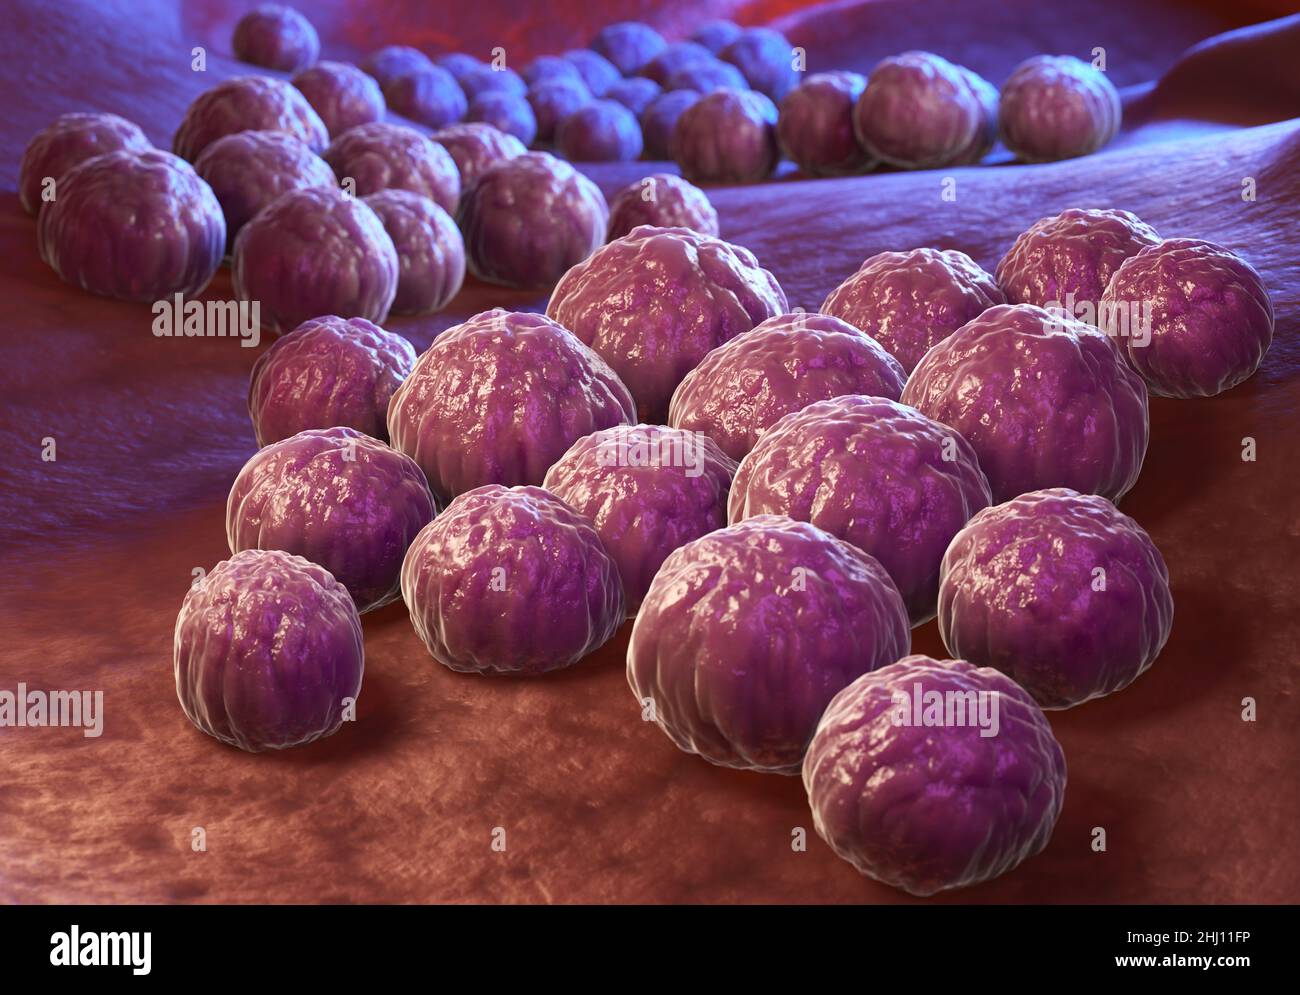 Chlamydia trachomatis, un intracellulare obbligato patogeno umano, è una delle quattro specie batteriche in genere Chlamydia. 3D illustrazione Foto Stock